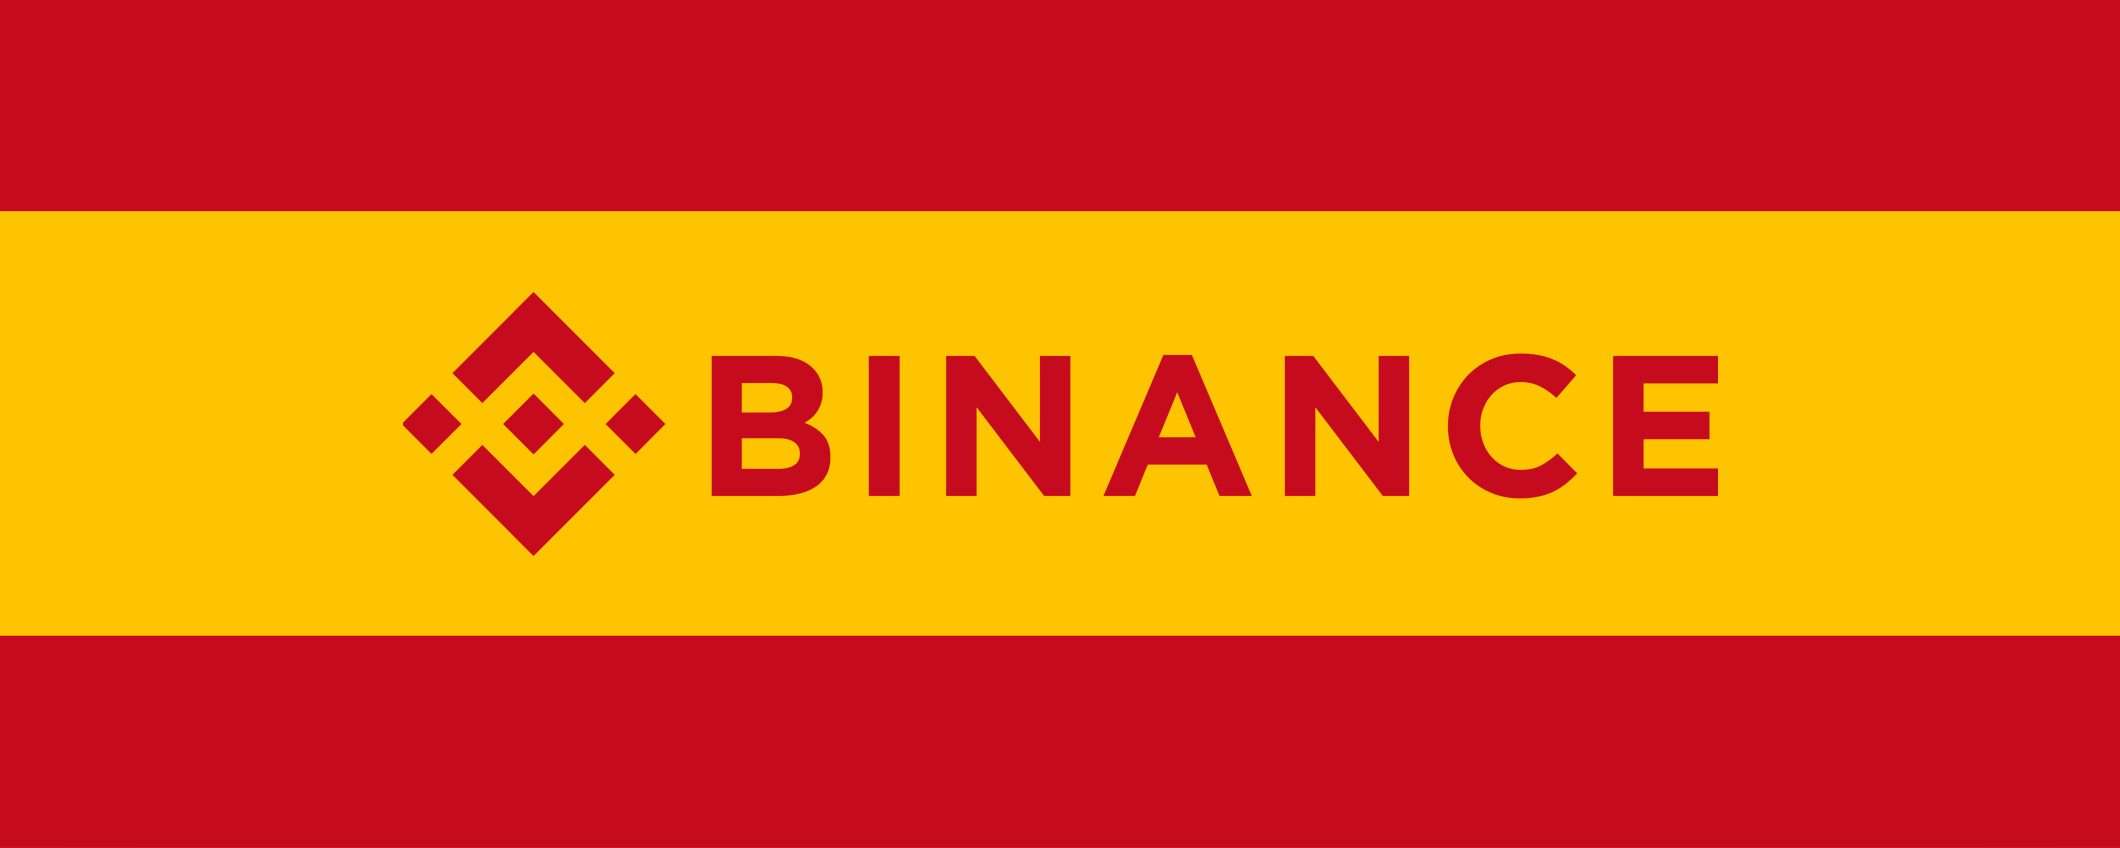 Binance, via libera in Spagna dalla banca centrale